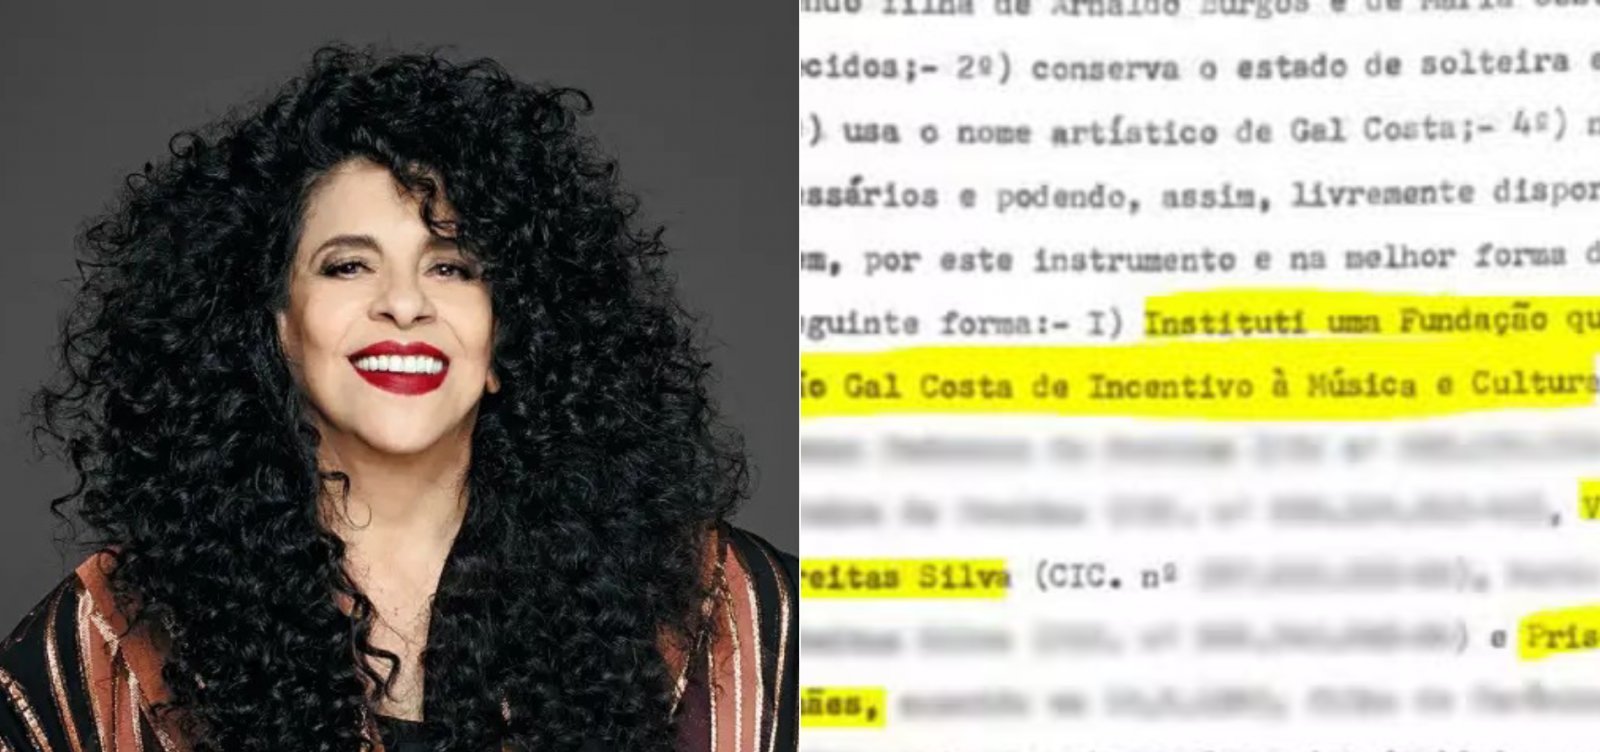 Filho de Gal Costa faz acordo com primas da cantora para criar fundação com nome da artista